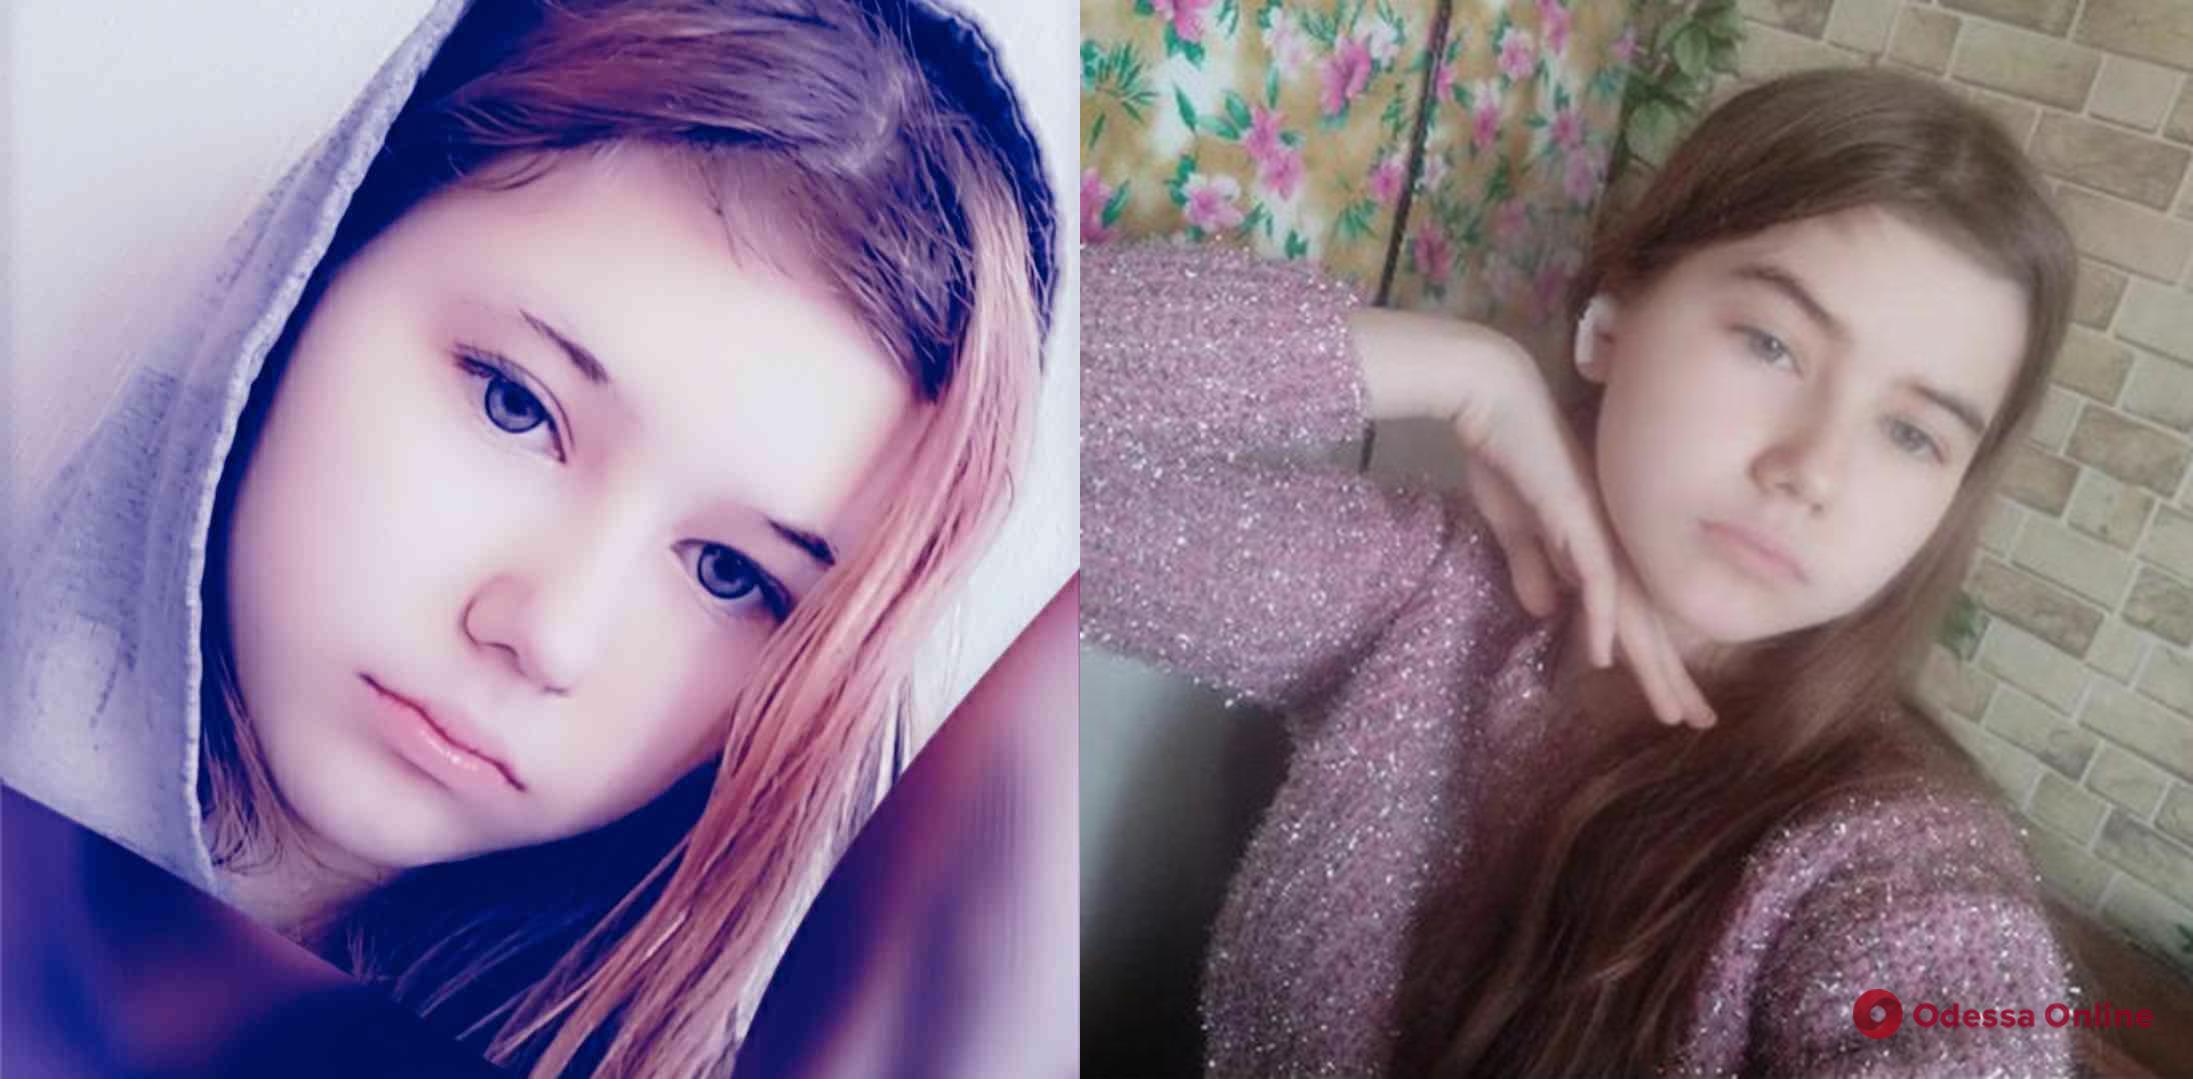 Одесские правоохранители ищут пропавшую 16-летнюю девушку